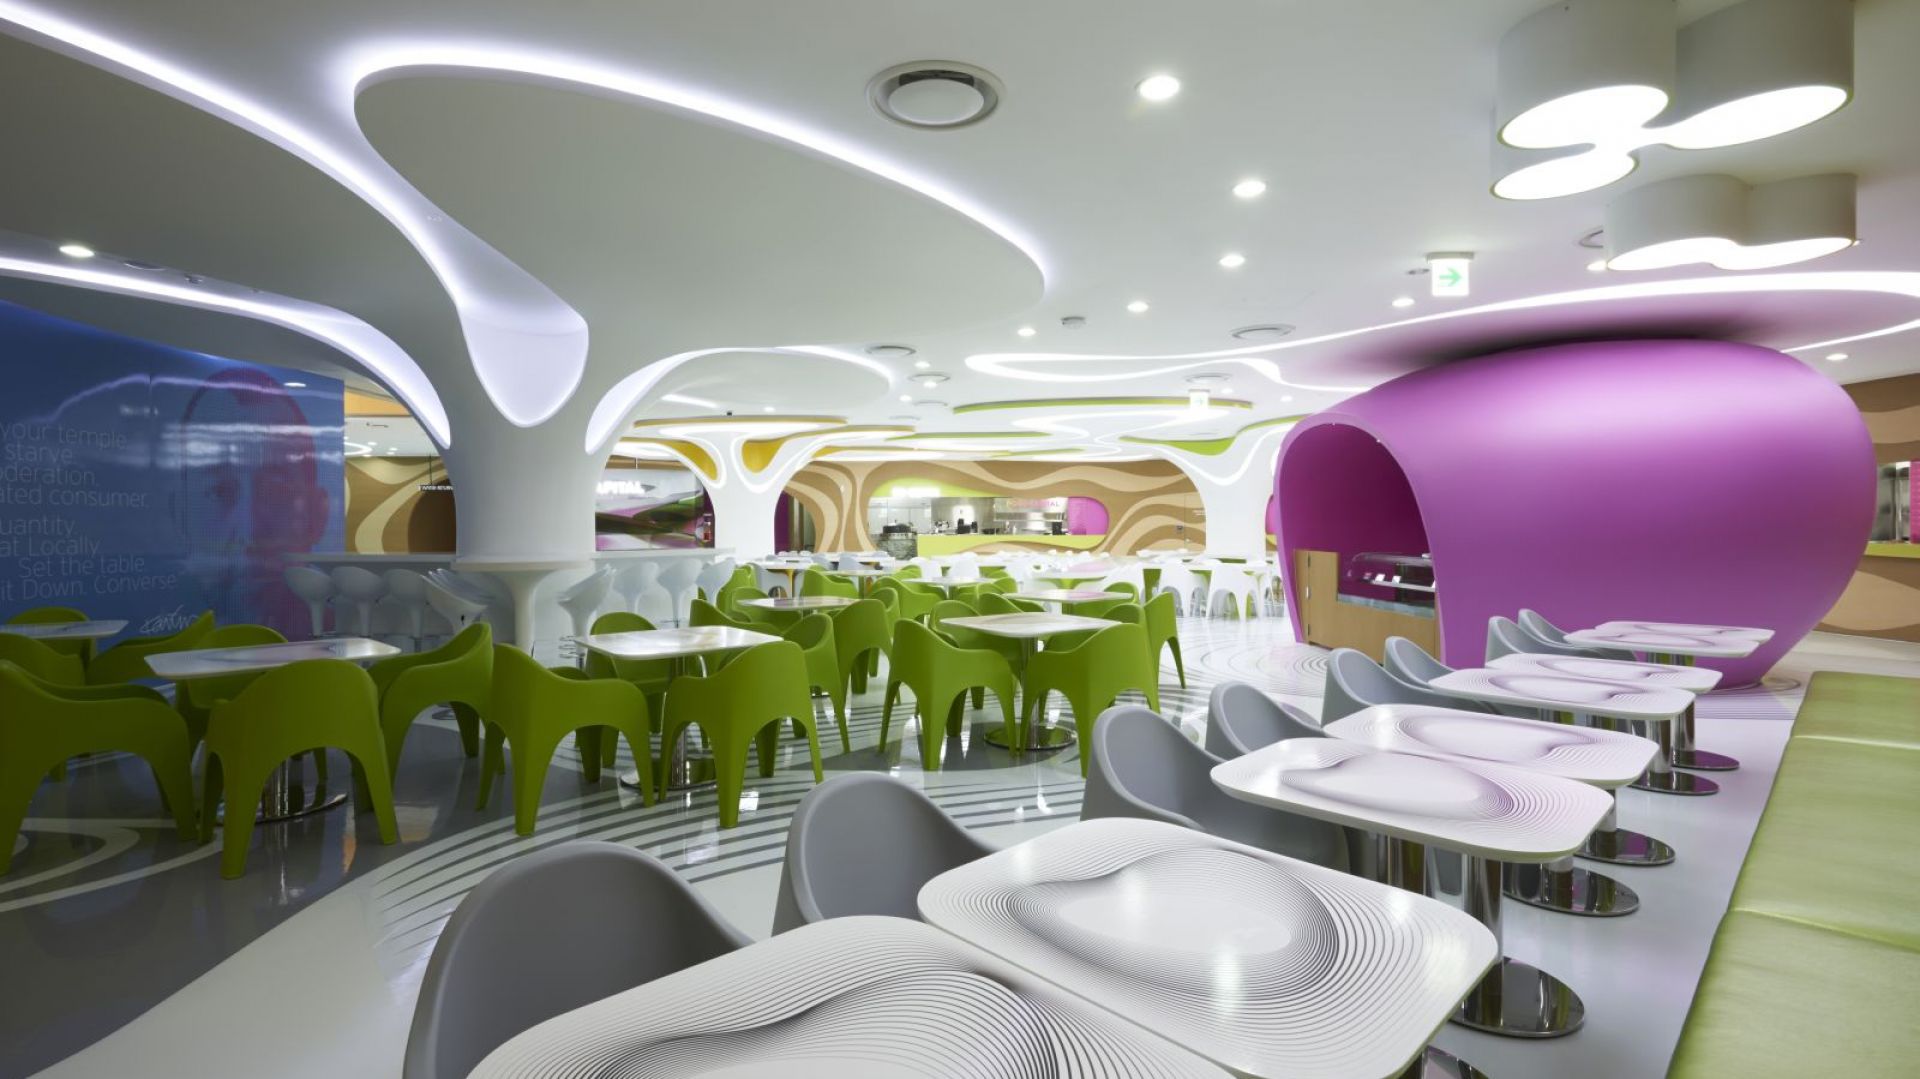 Wnętrze przyszłości - restauracja według projektu Karima Rashida